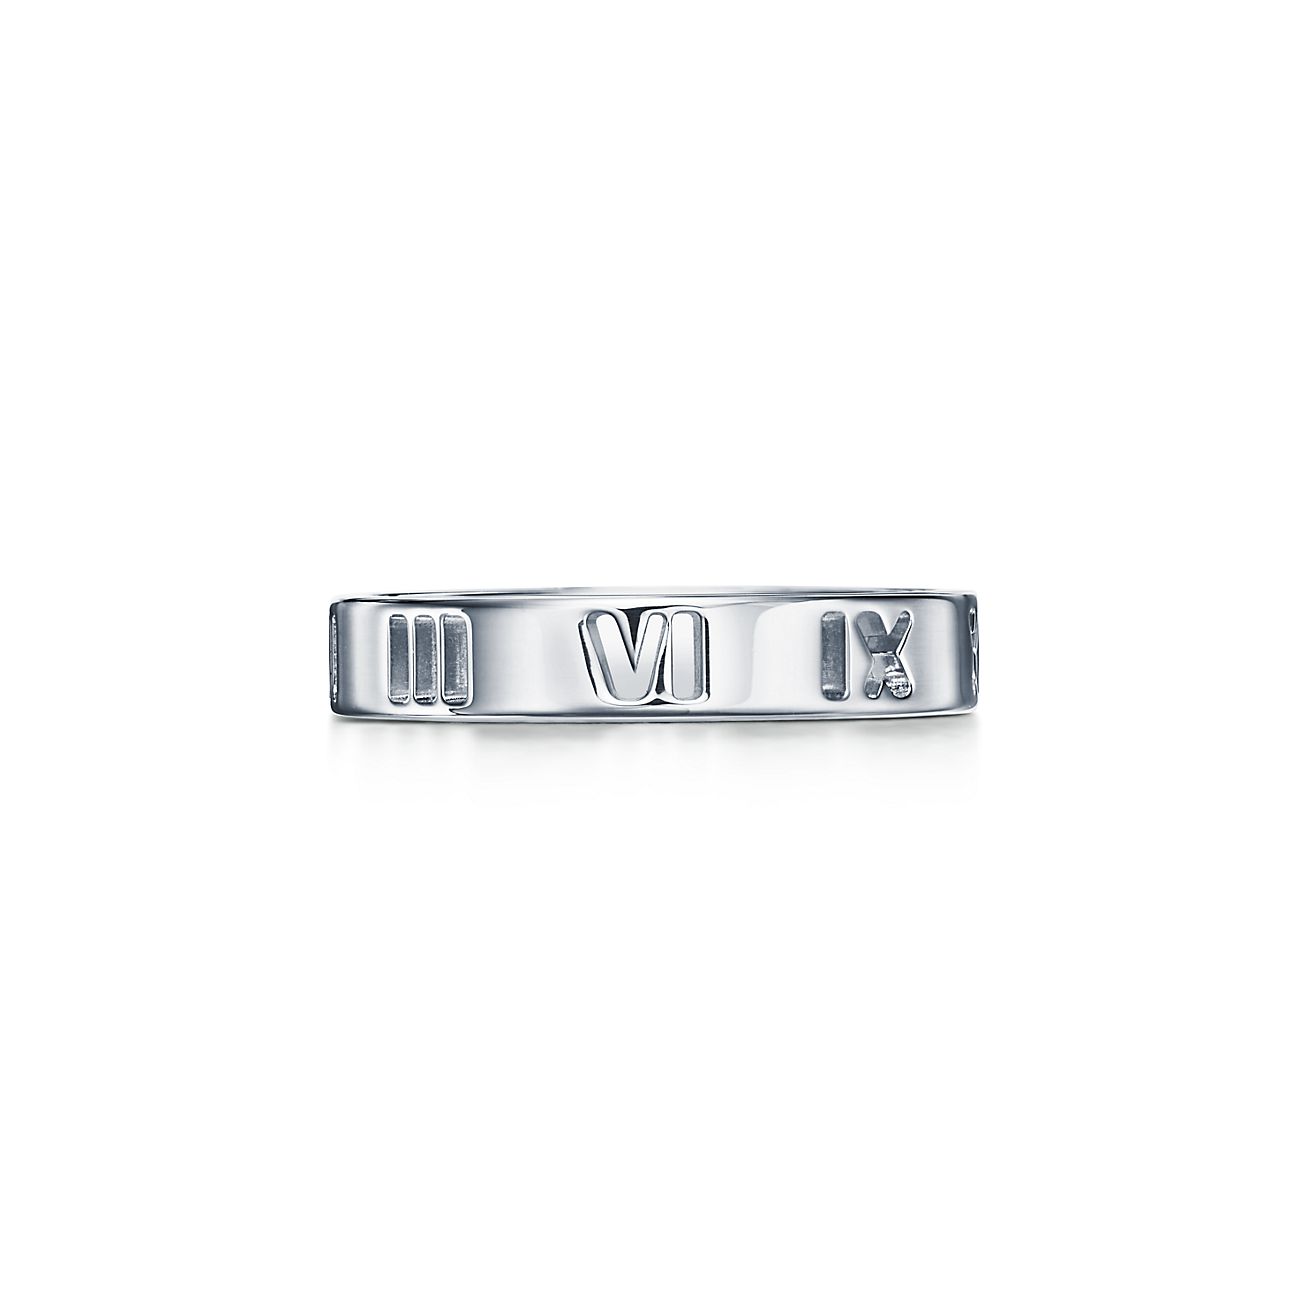 Atlas™ Pierced Ring in Silver, Narrow 